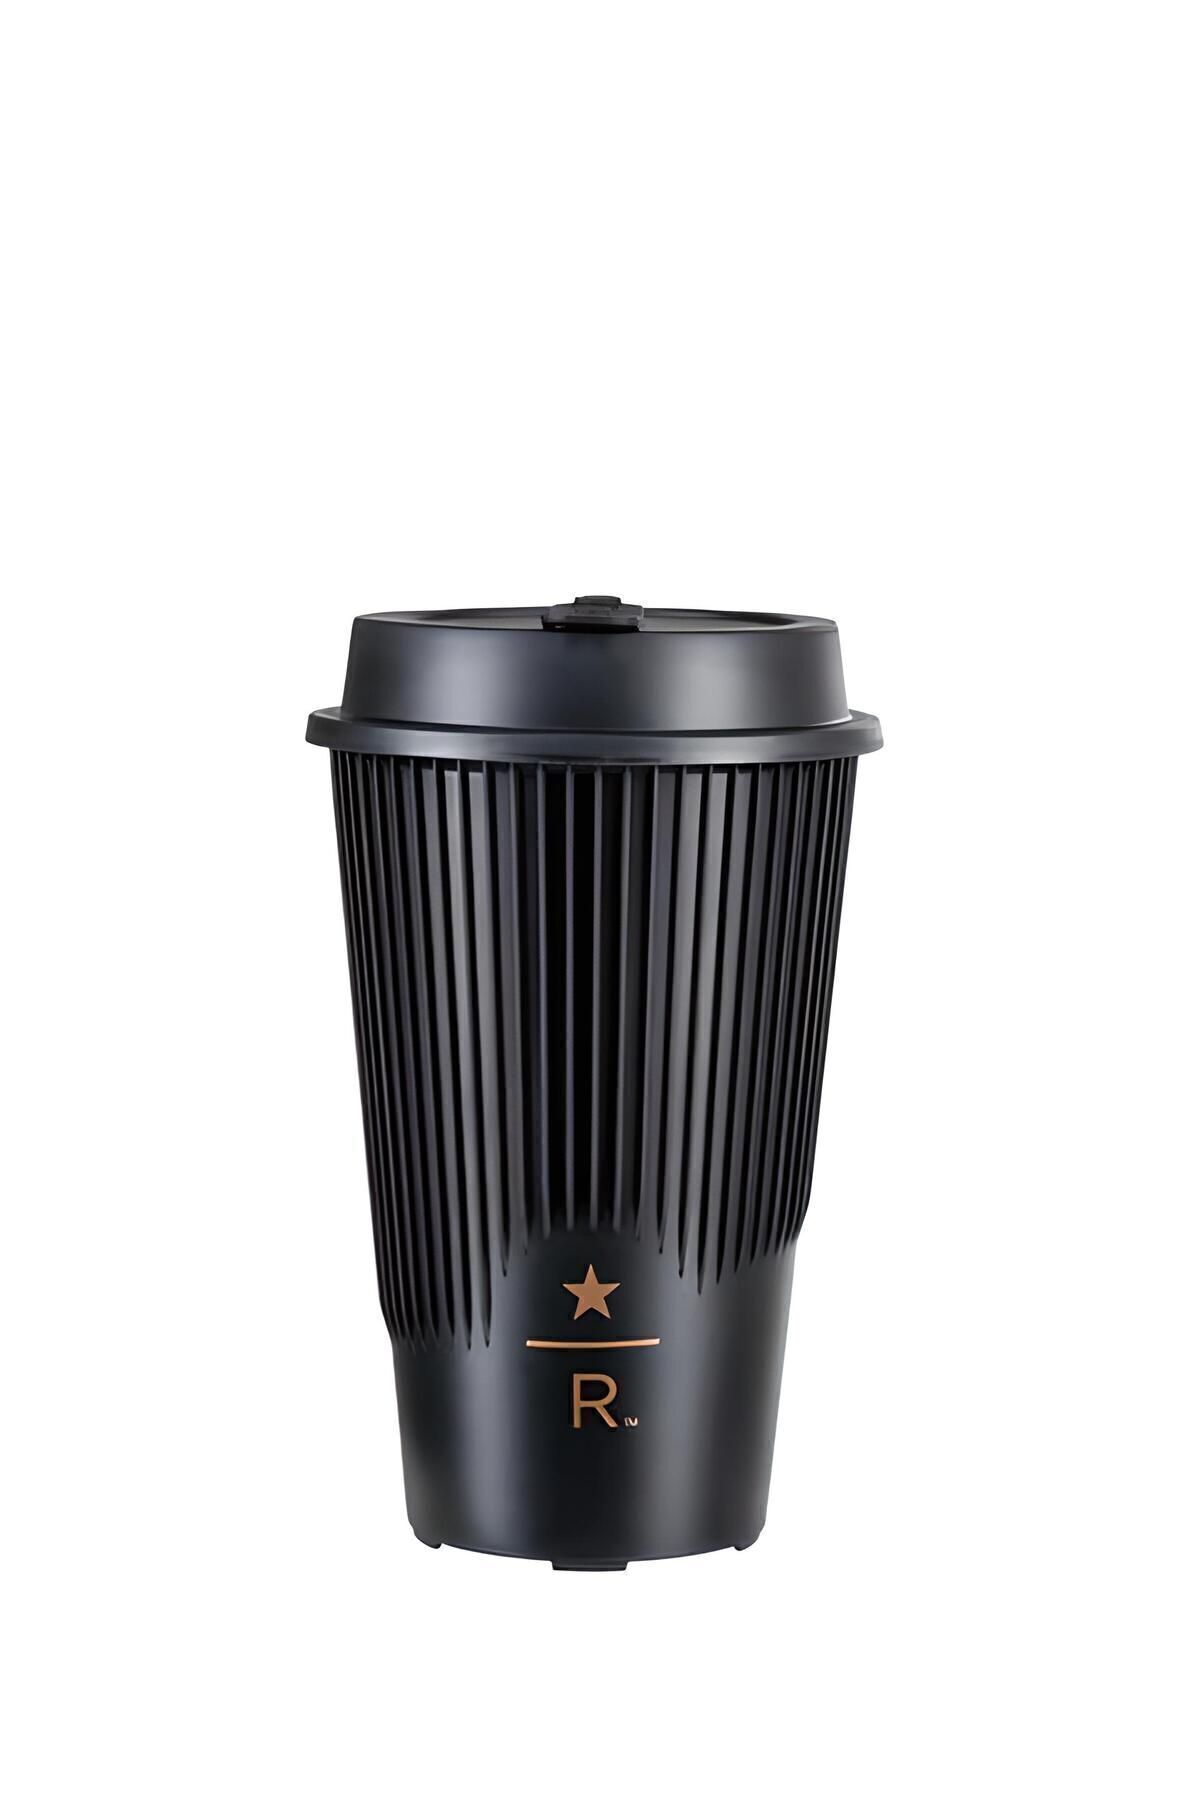 Starbucks ® Reserve Yeniden Kullanılabilir Sıcak İçecek Bardağı - Siyah - 473 ml